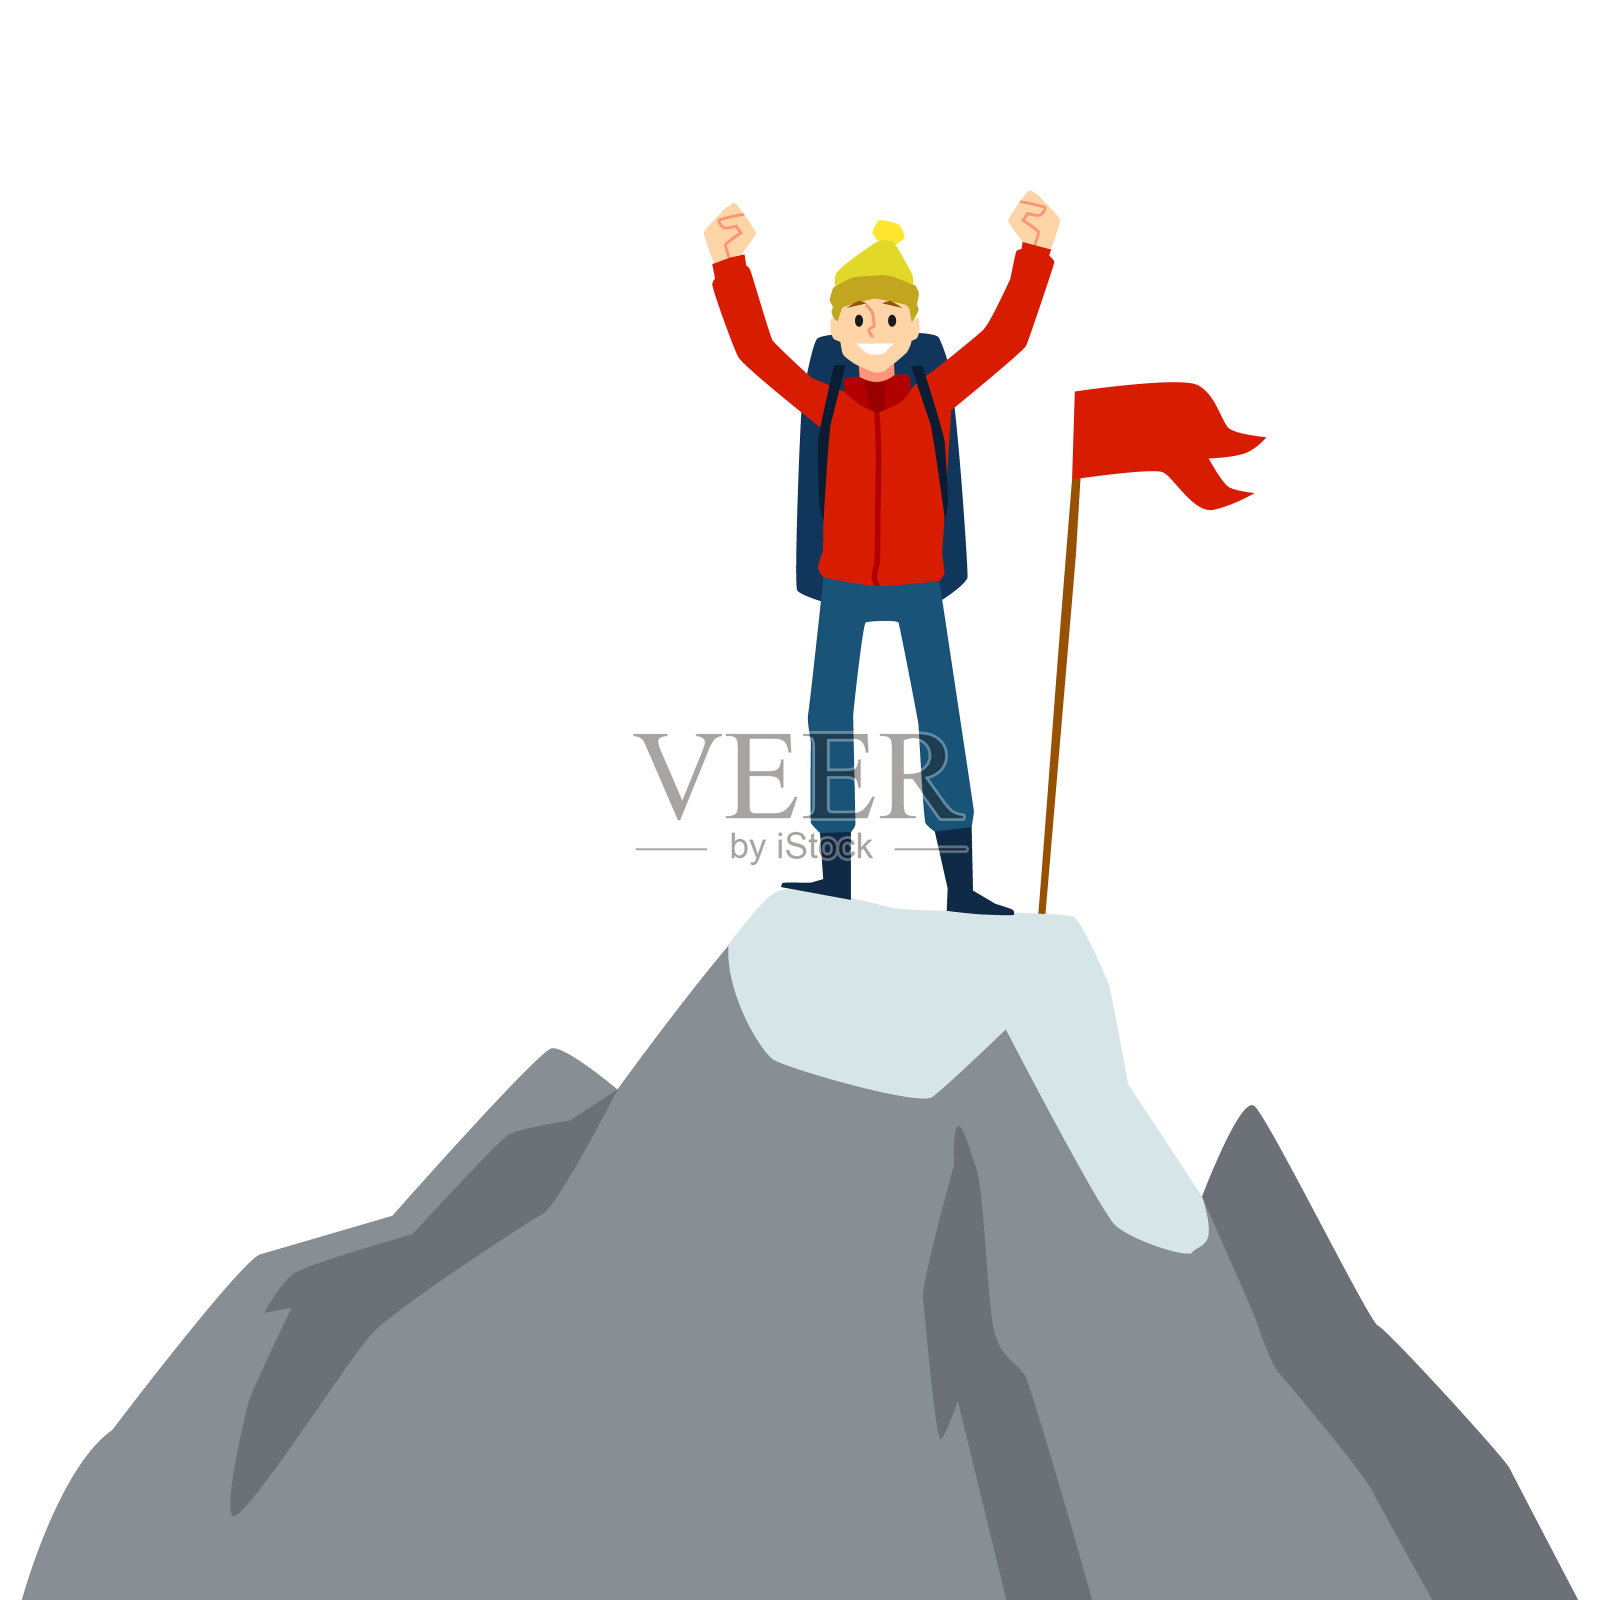 快乐的卡通人物举着红旗站在山顶上设计元素图片